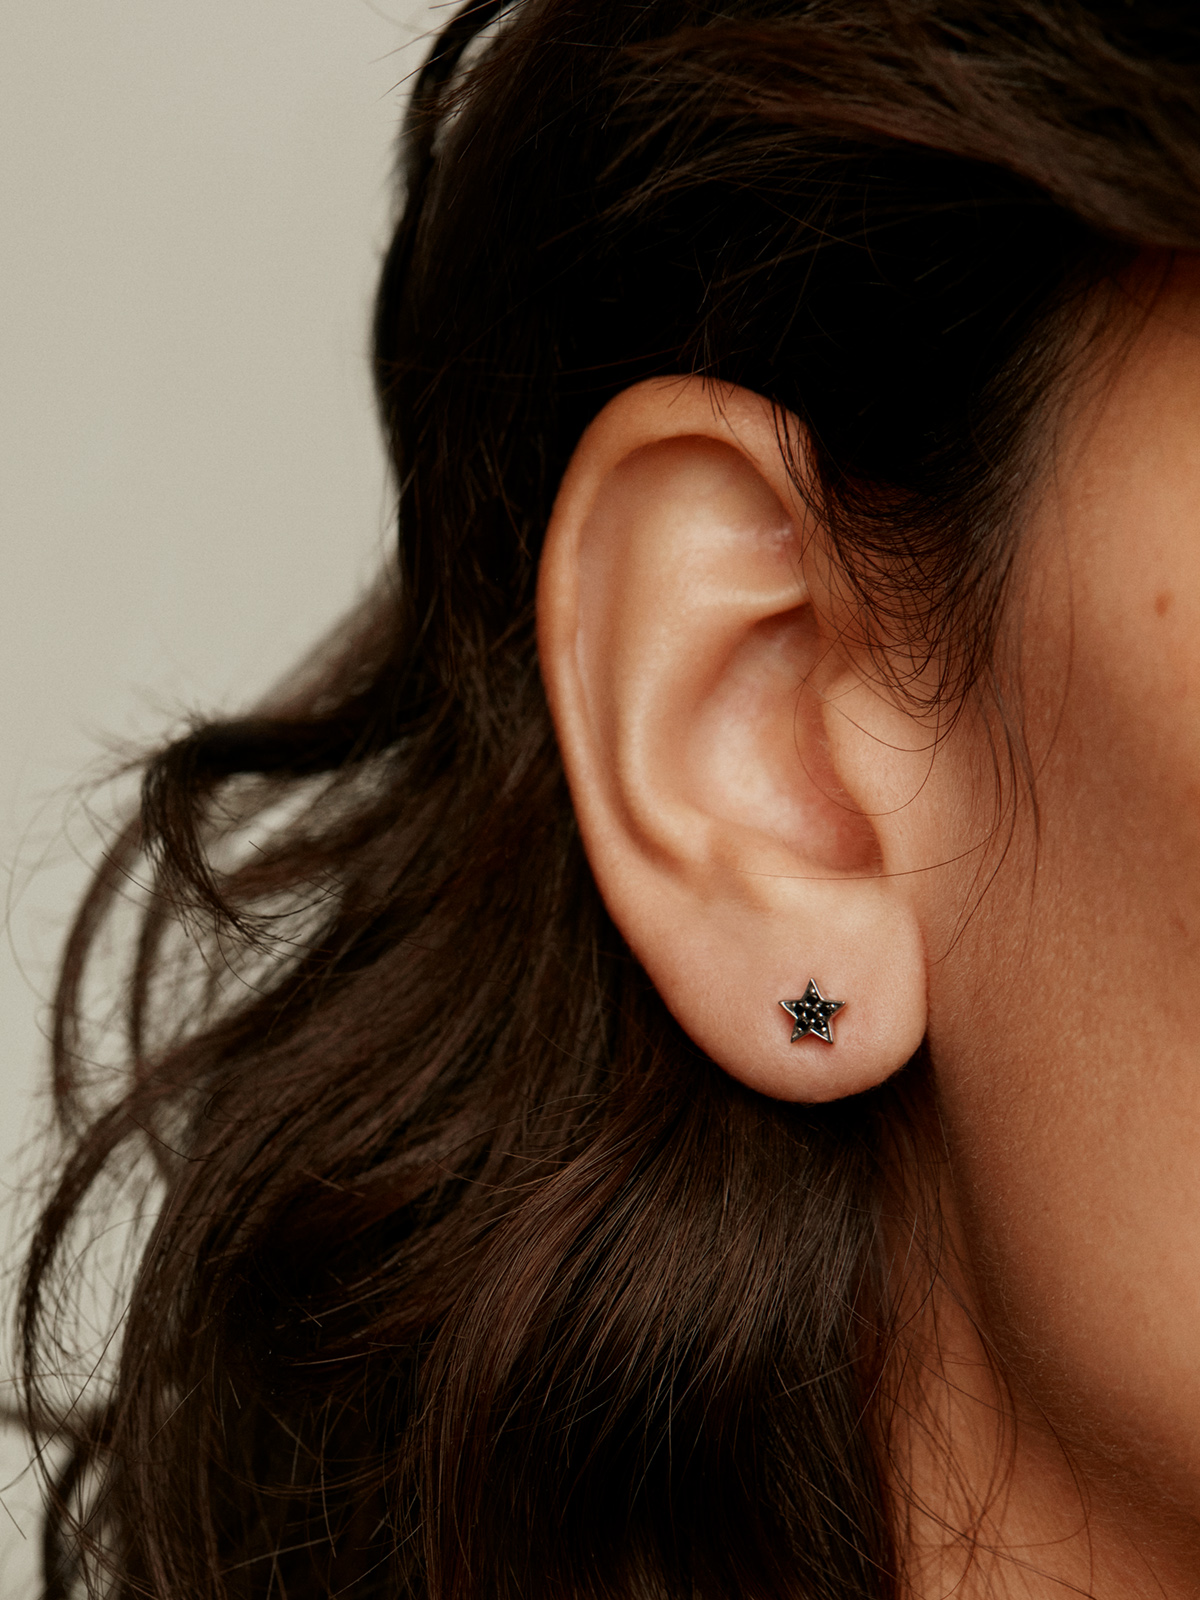 Boucles d'oreilles en argent 925 en forme d'étoile avec spinelles noires.